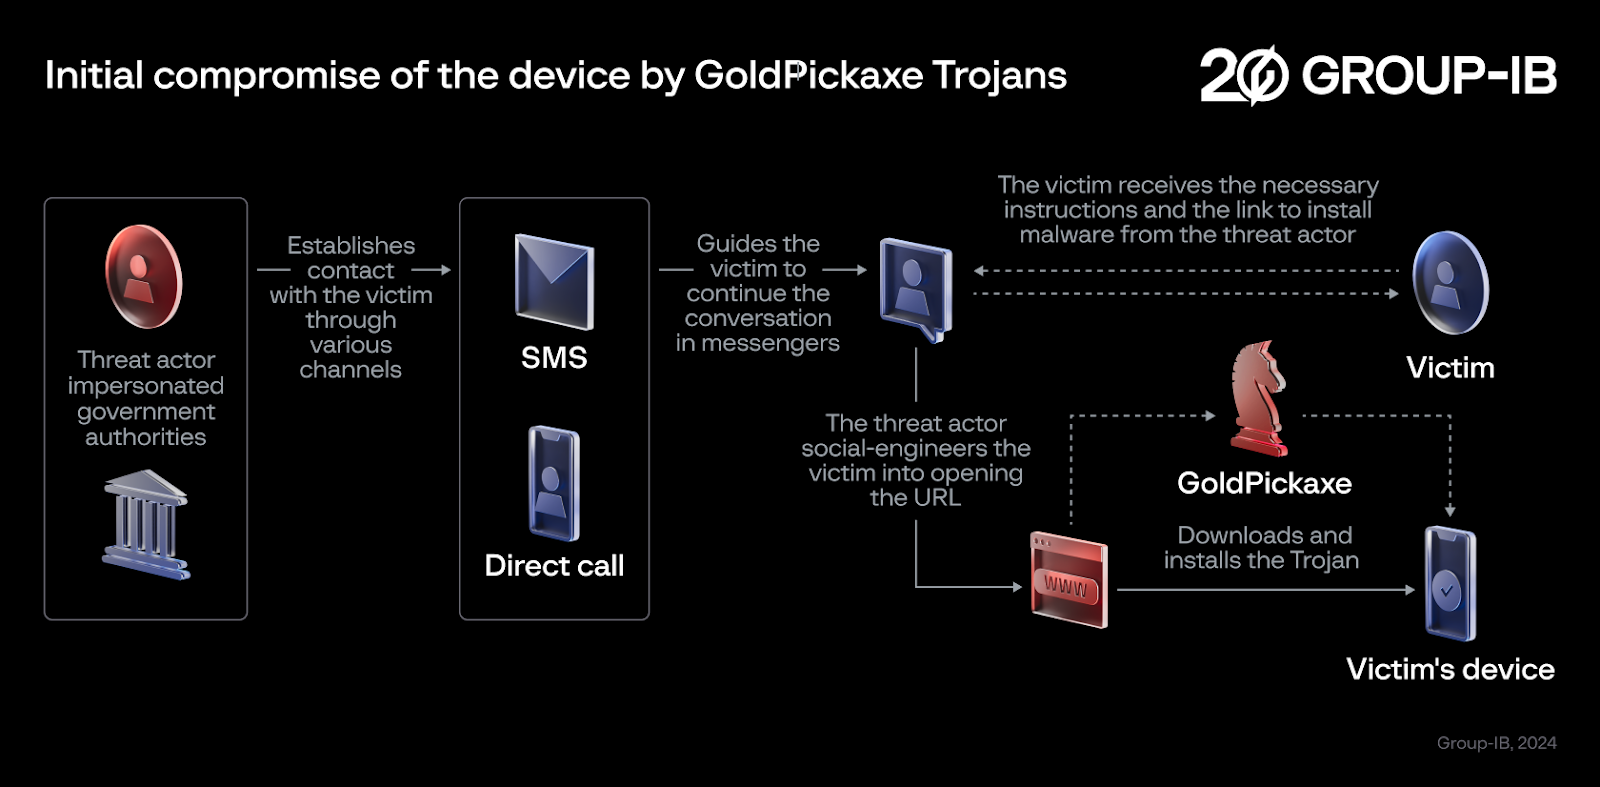 GoldPickaxe 木马对设备的初步攻击